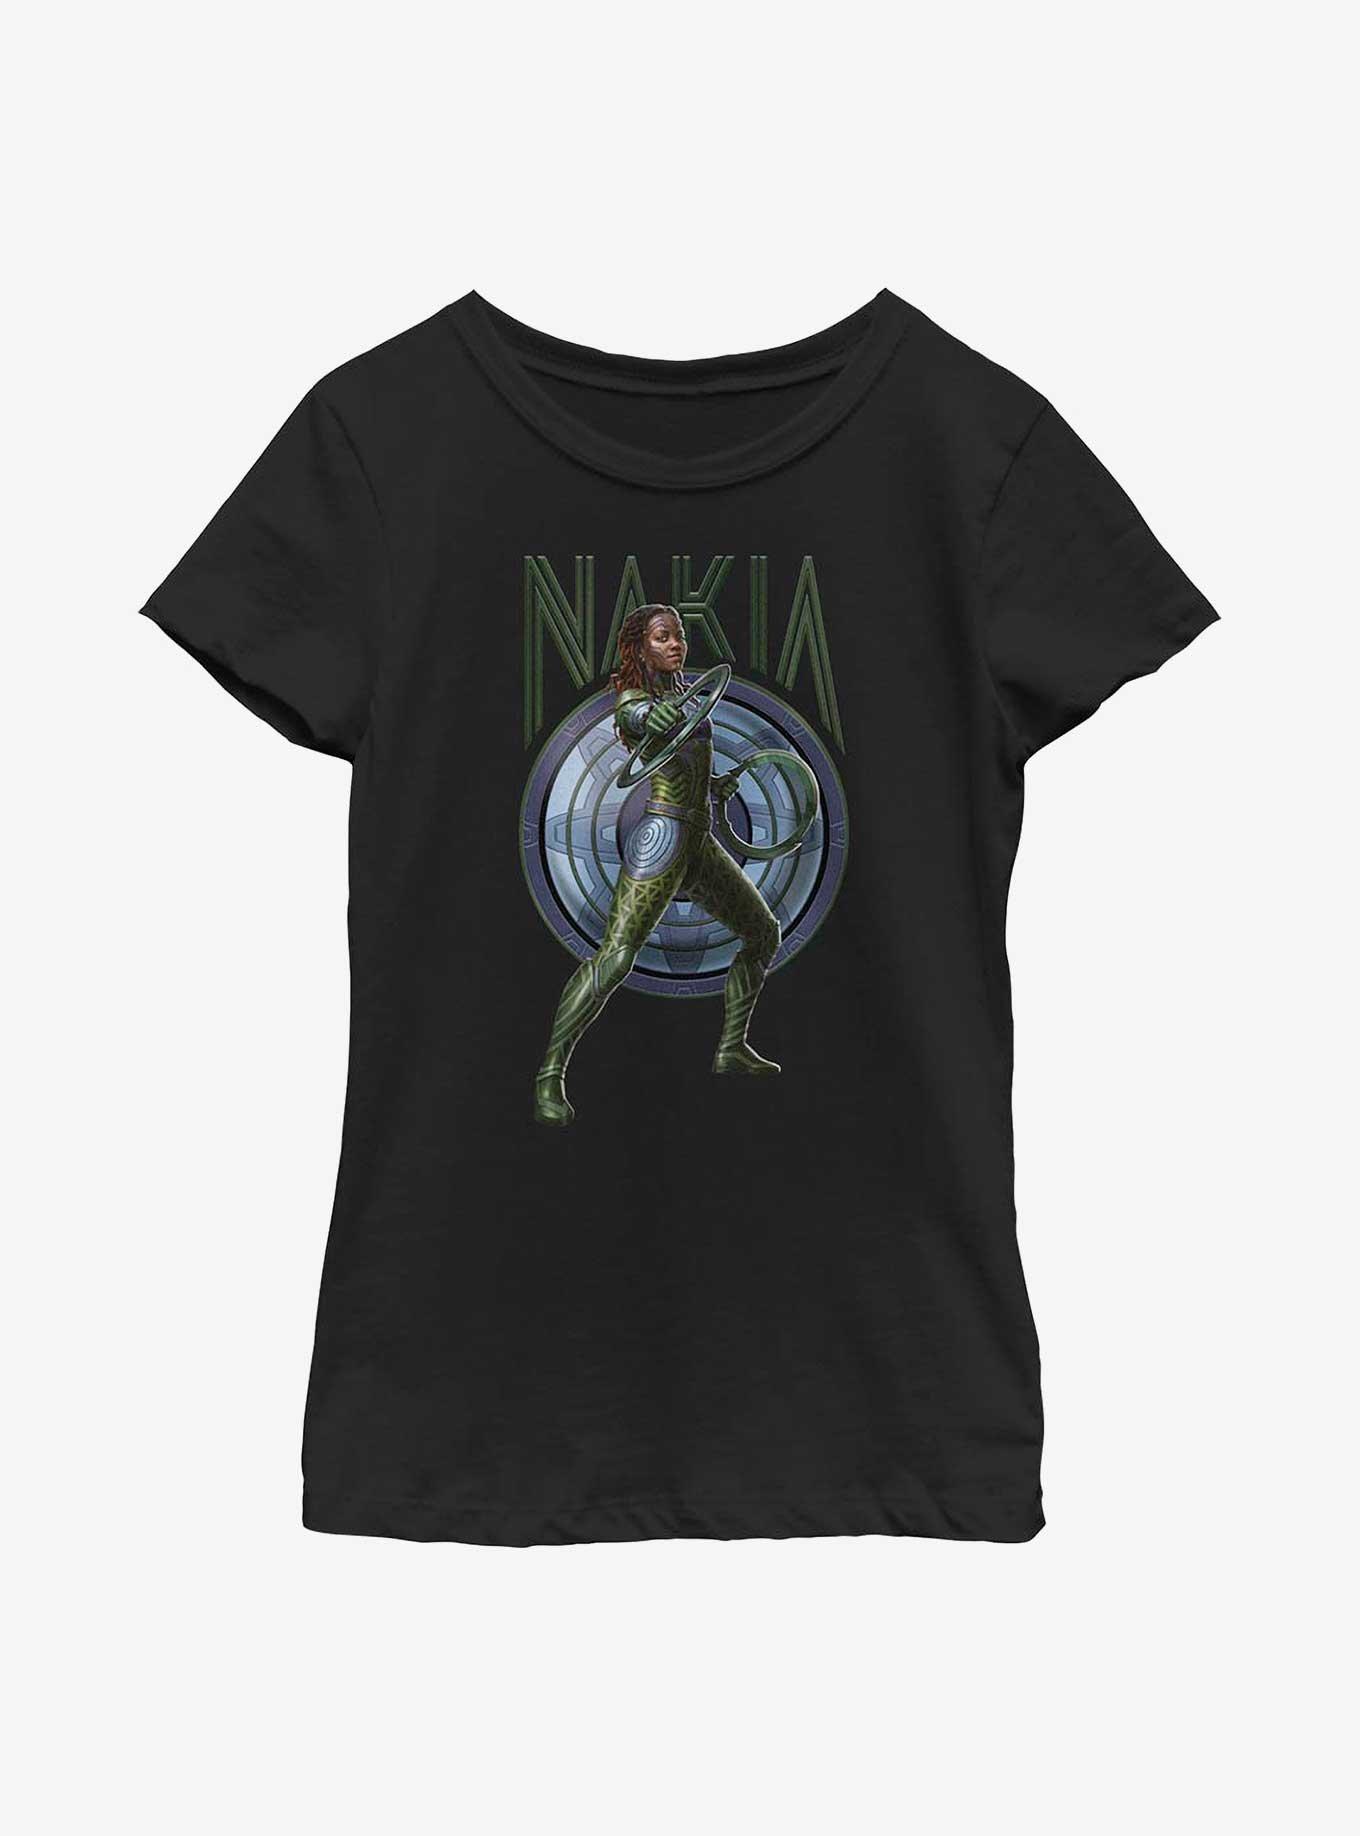 Marvel Black Panther: Wakanda Forever Nakia Youth Girls T-Shirt, BLACK, hi-res